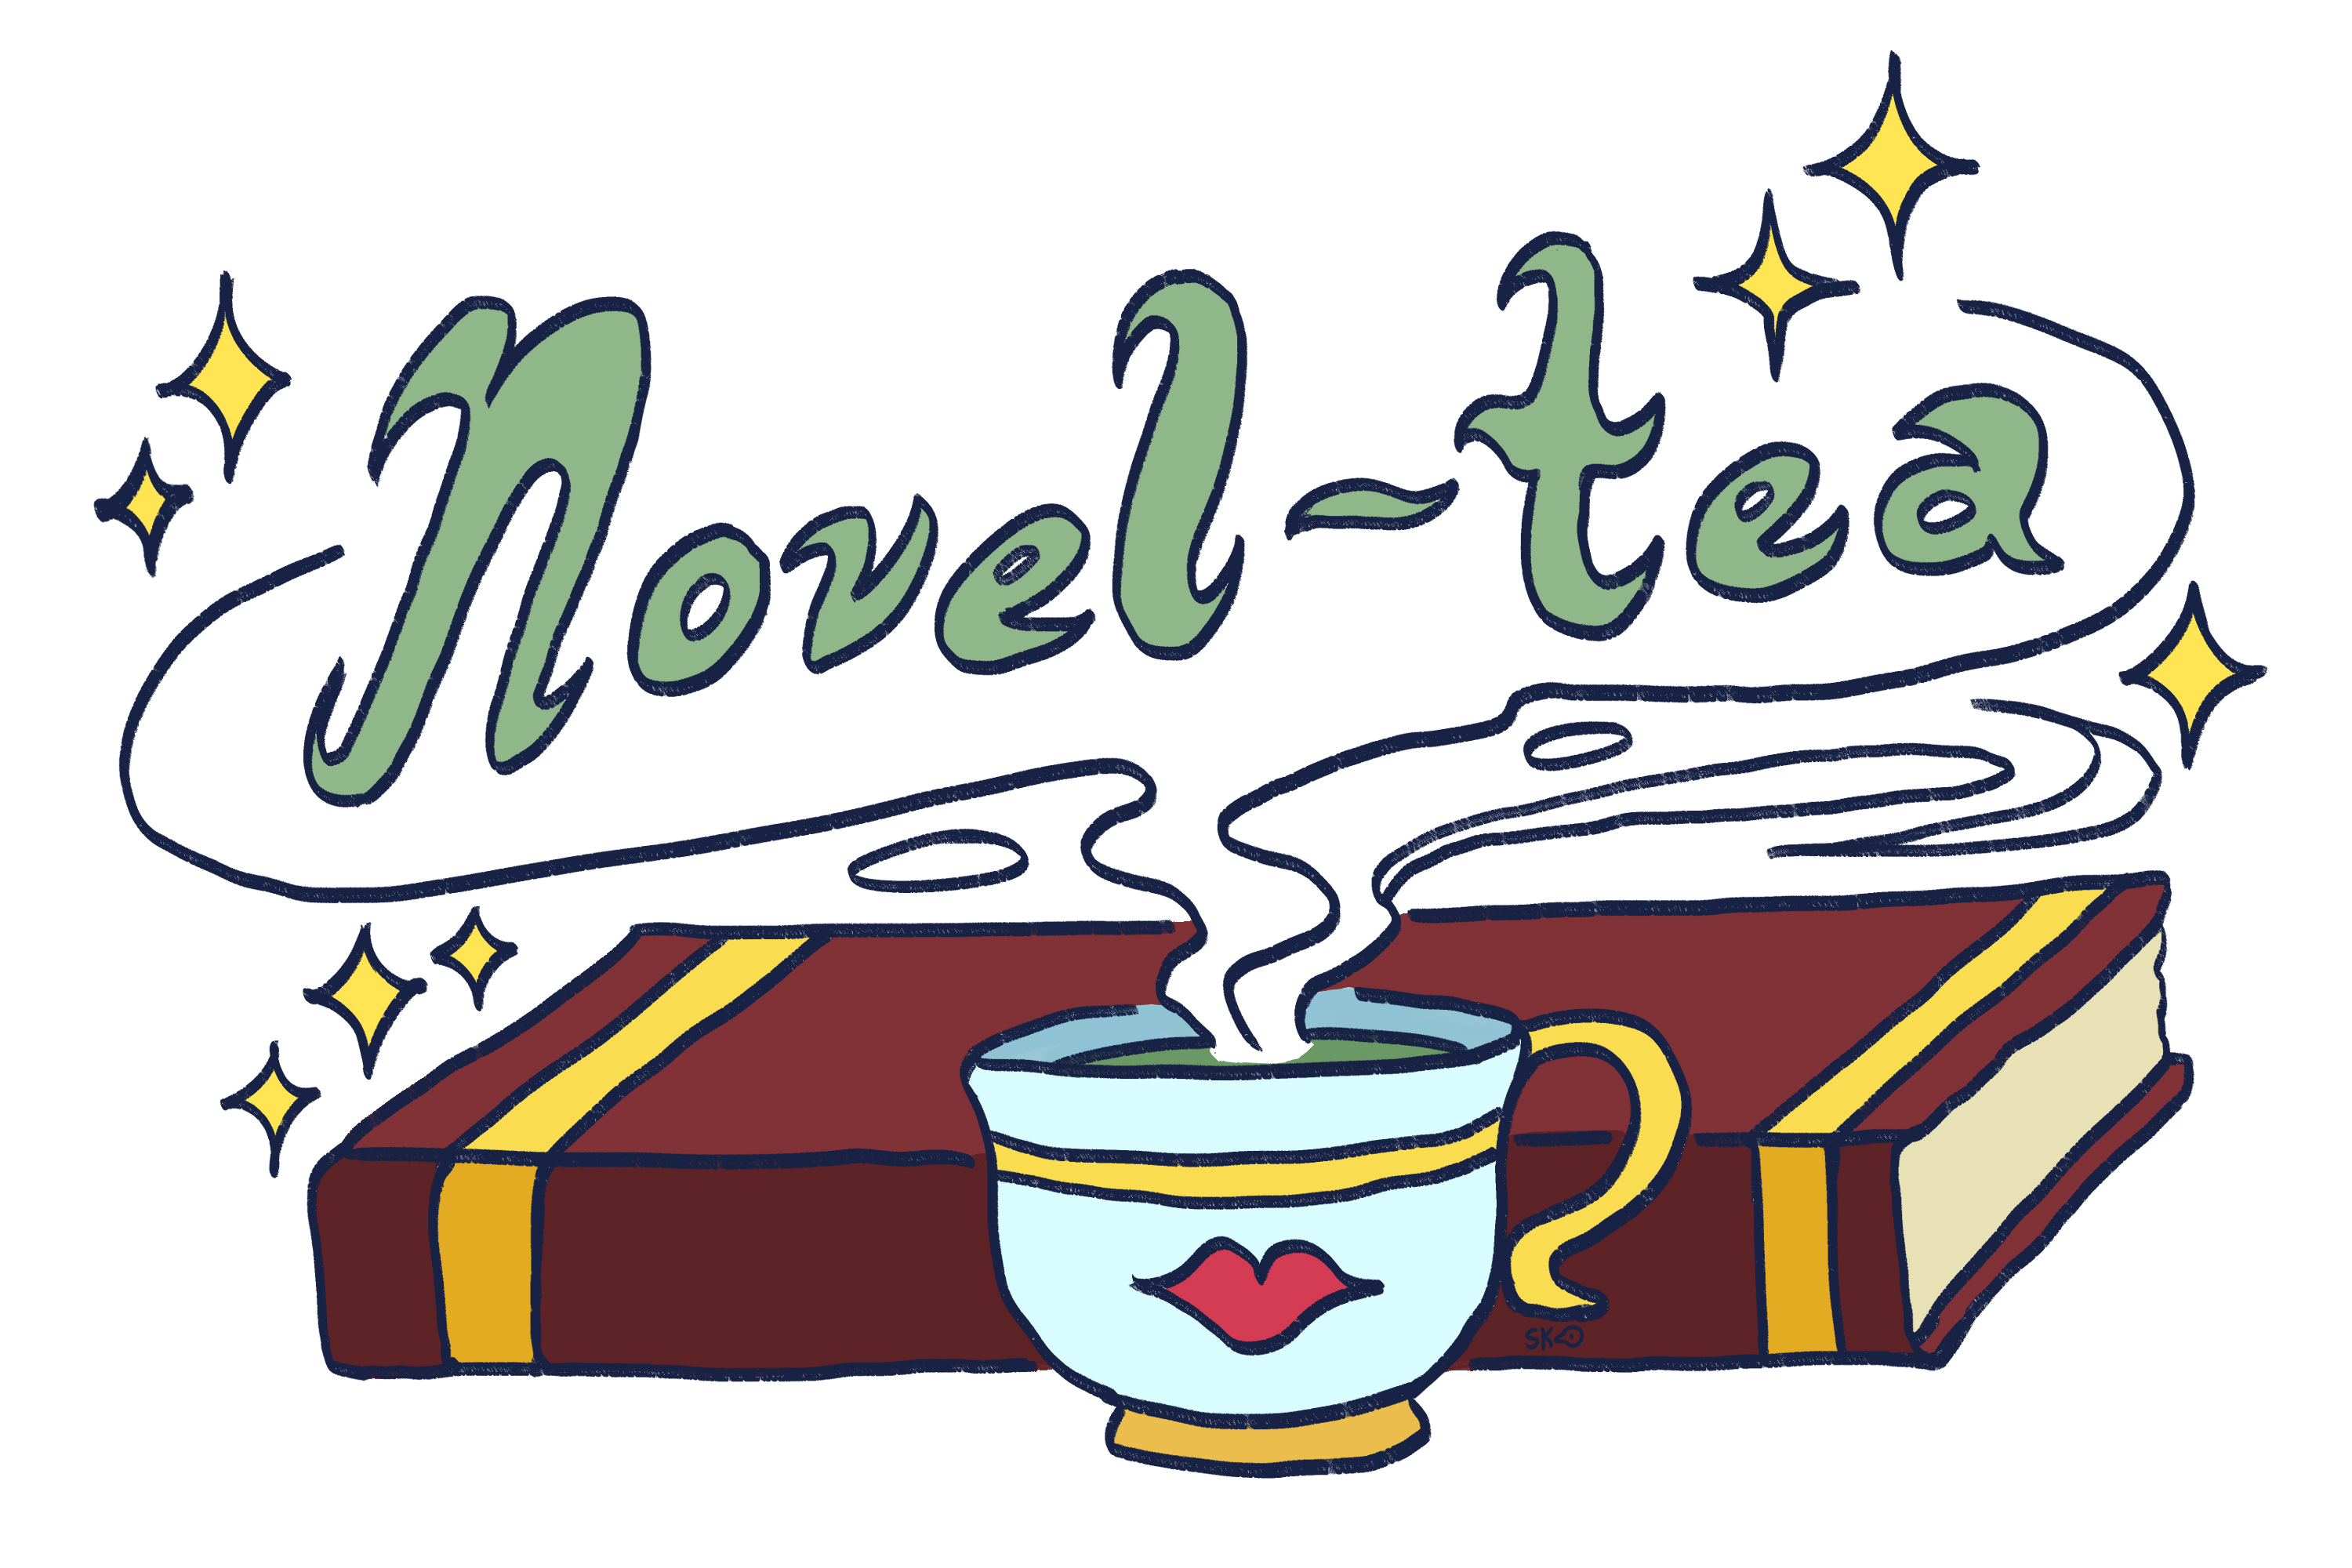 Novel-tea: Remember to think like a child